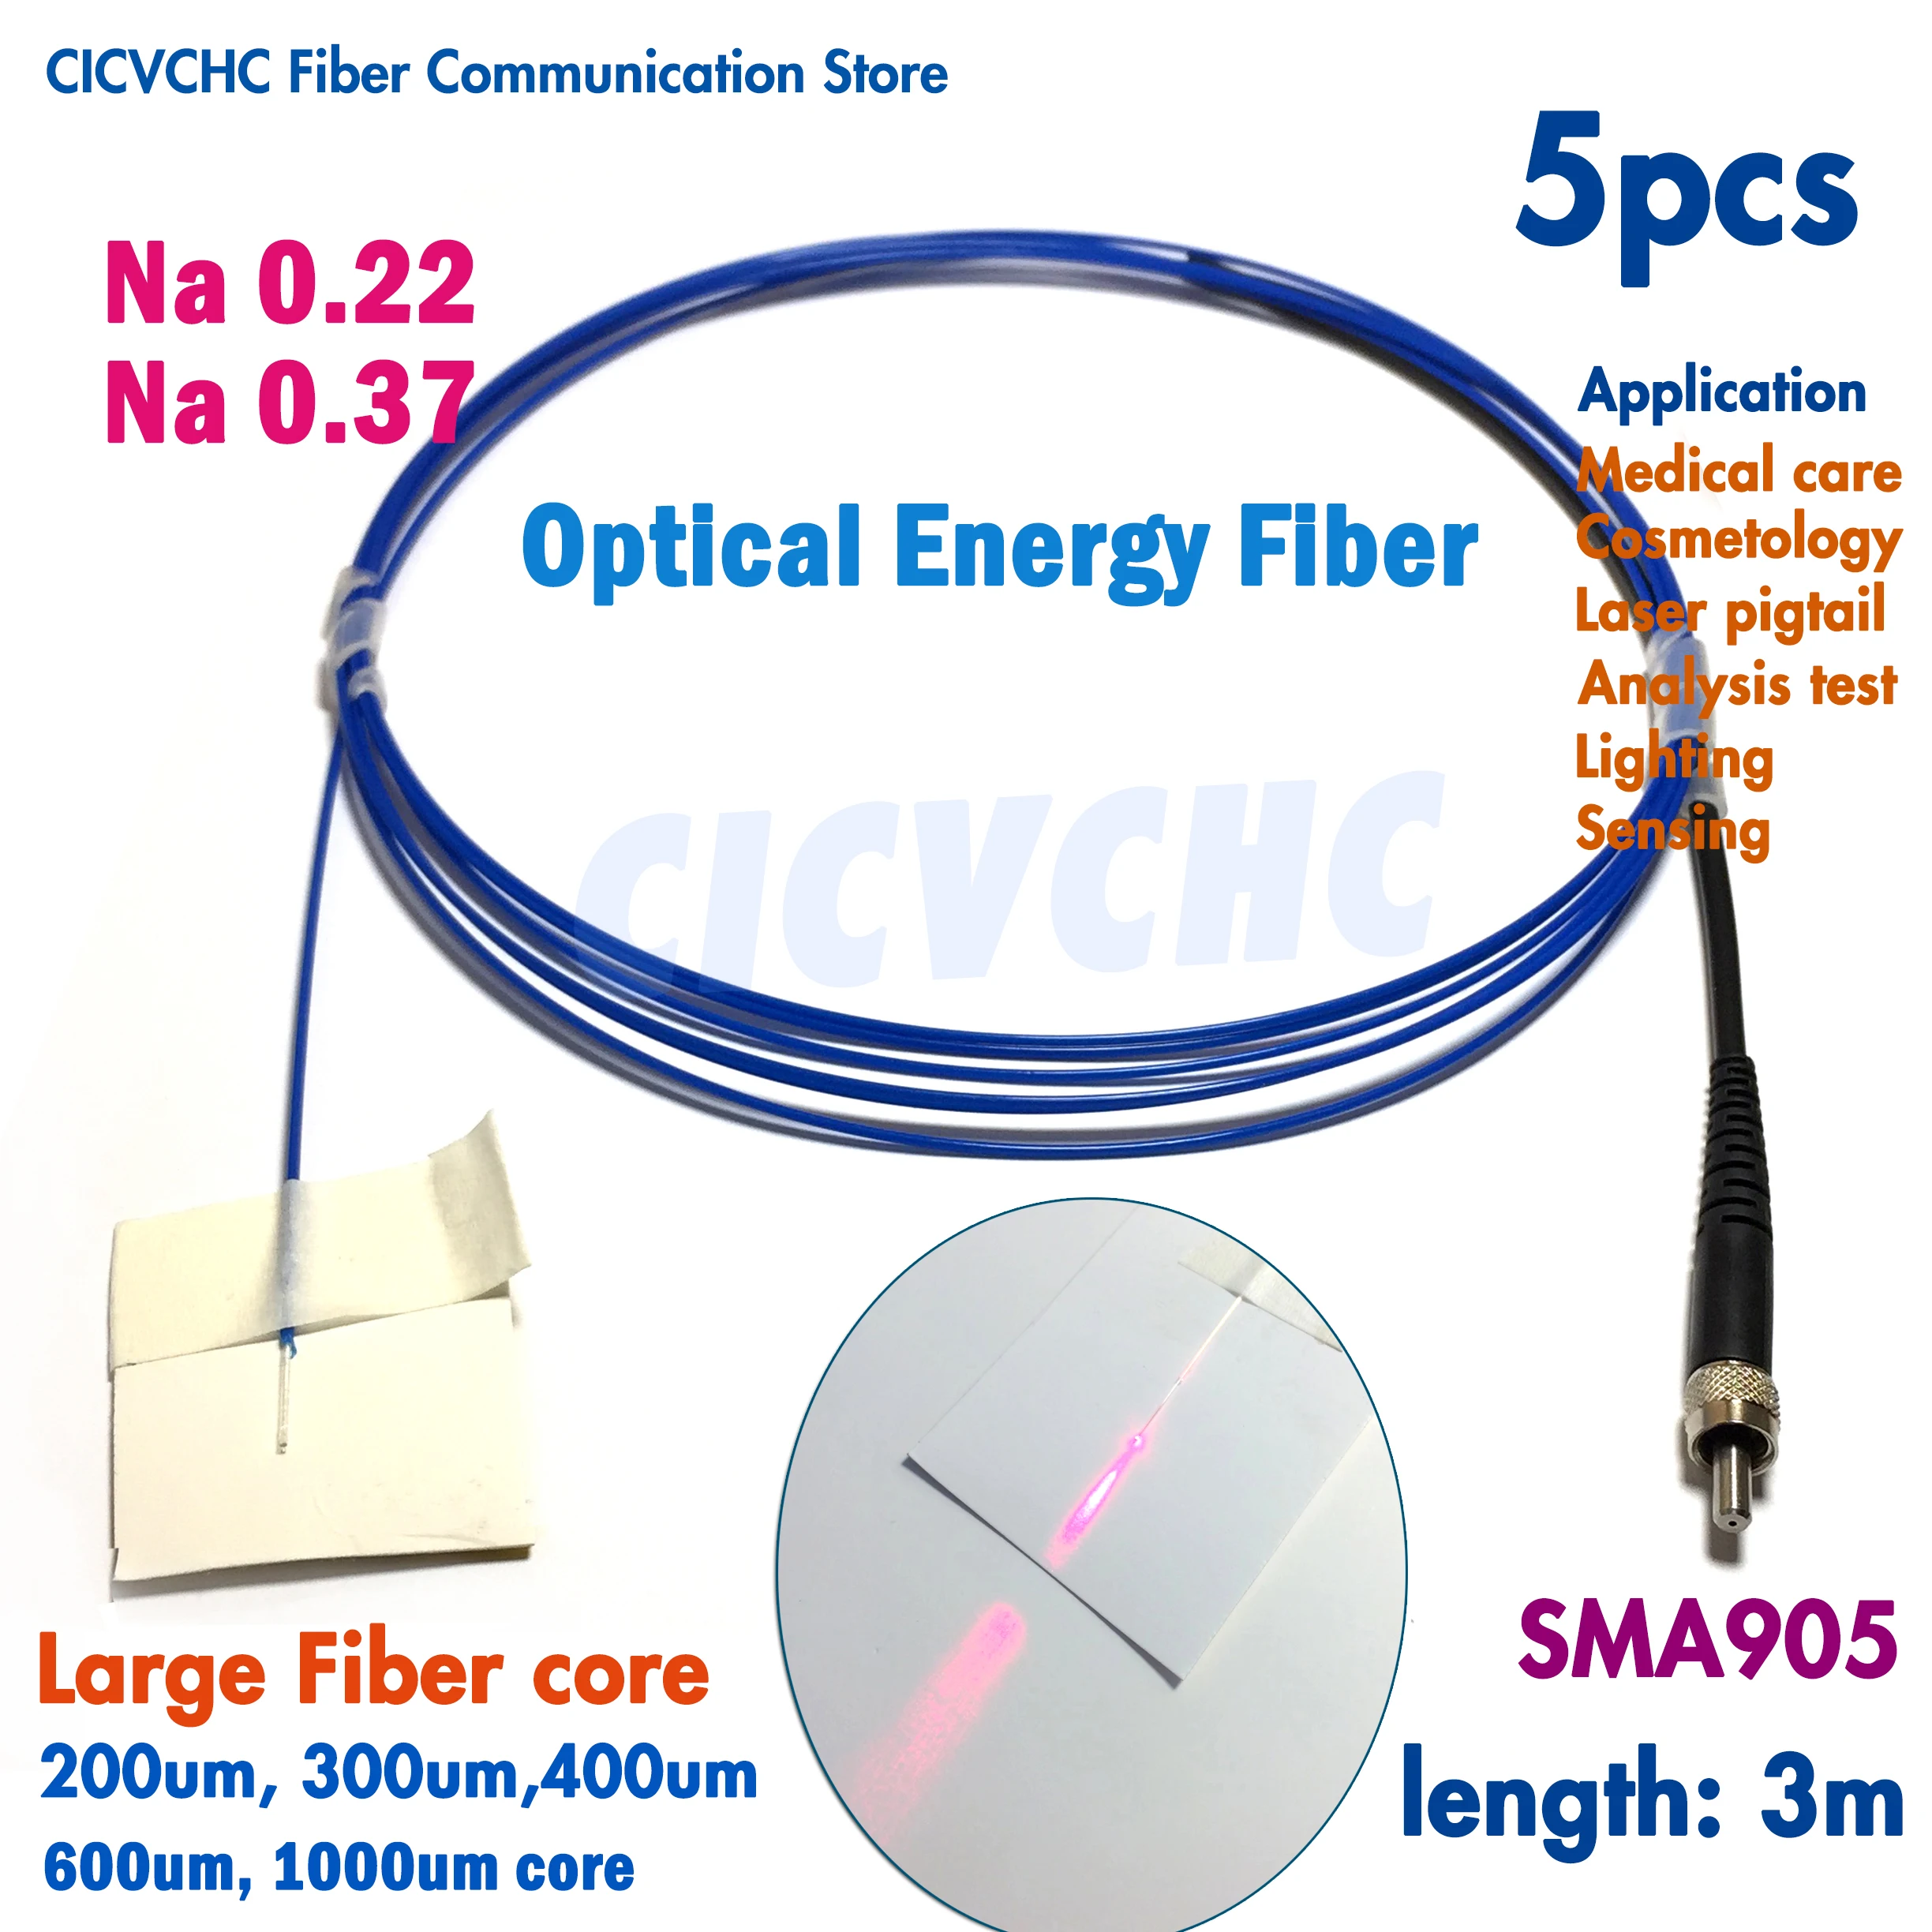 5pcs SMA905 Energy Fiber Optic Pigtail with 200um, 300um, 400um, 600um, 1000um Large Core Na0.22 or Na0.37